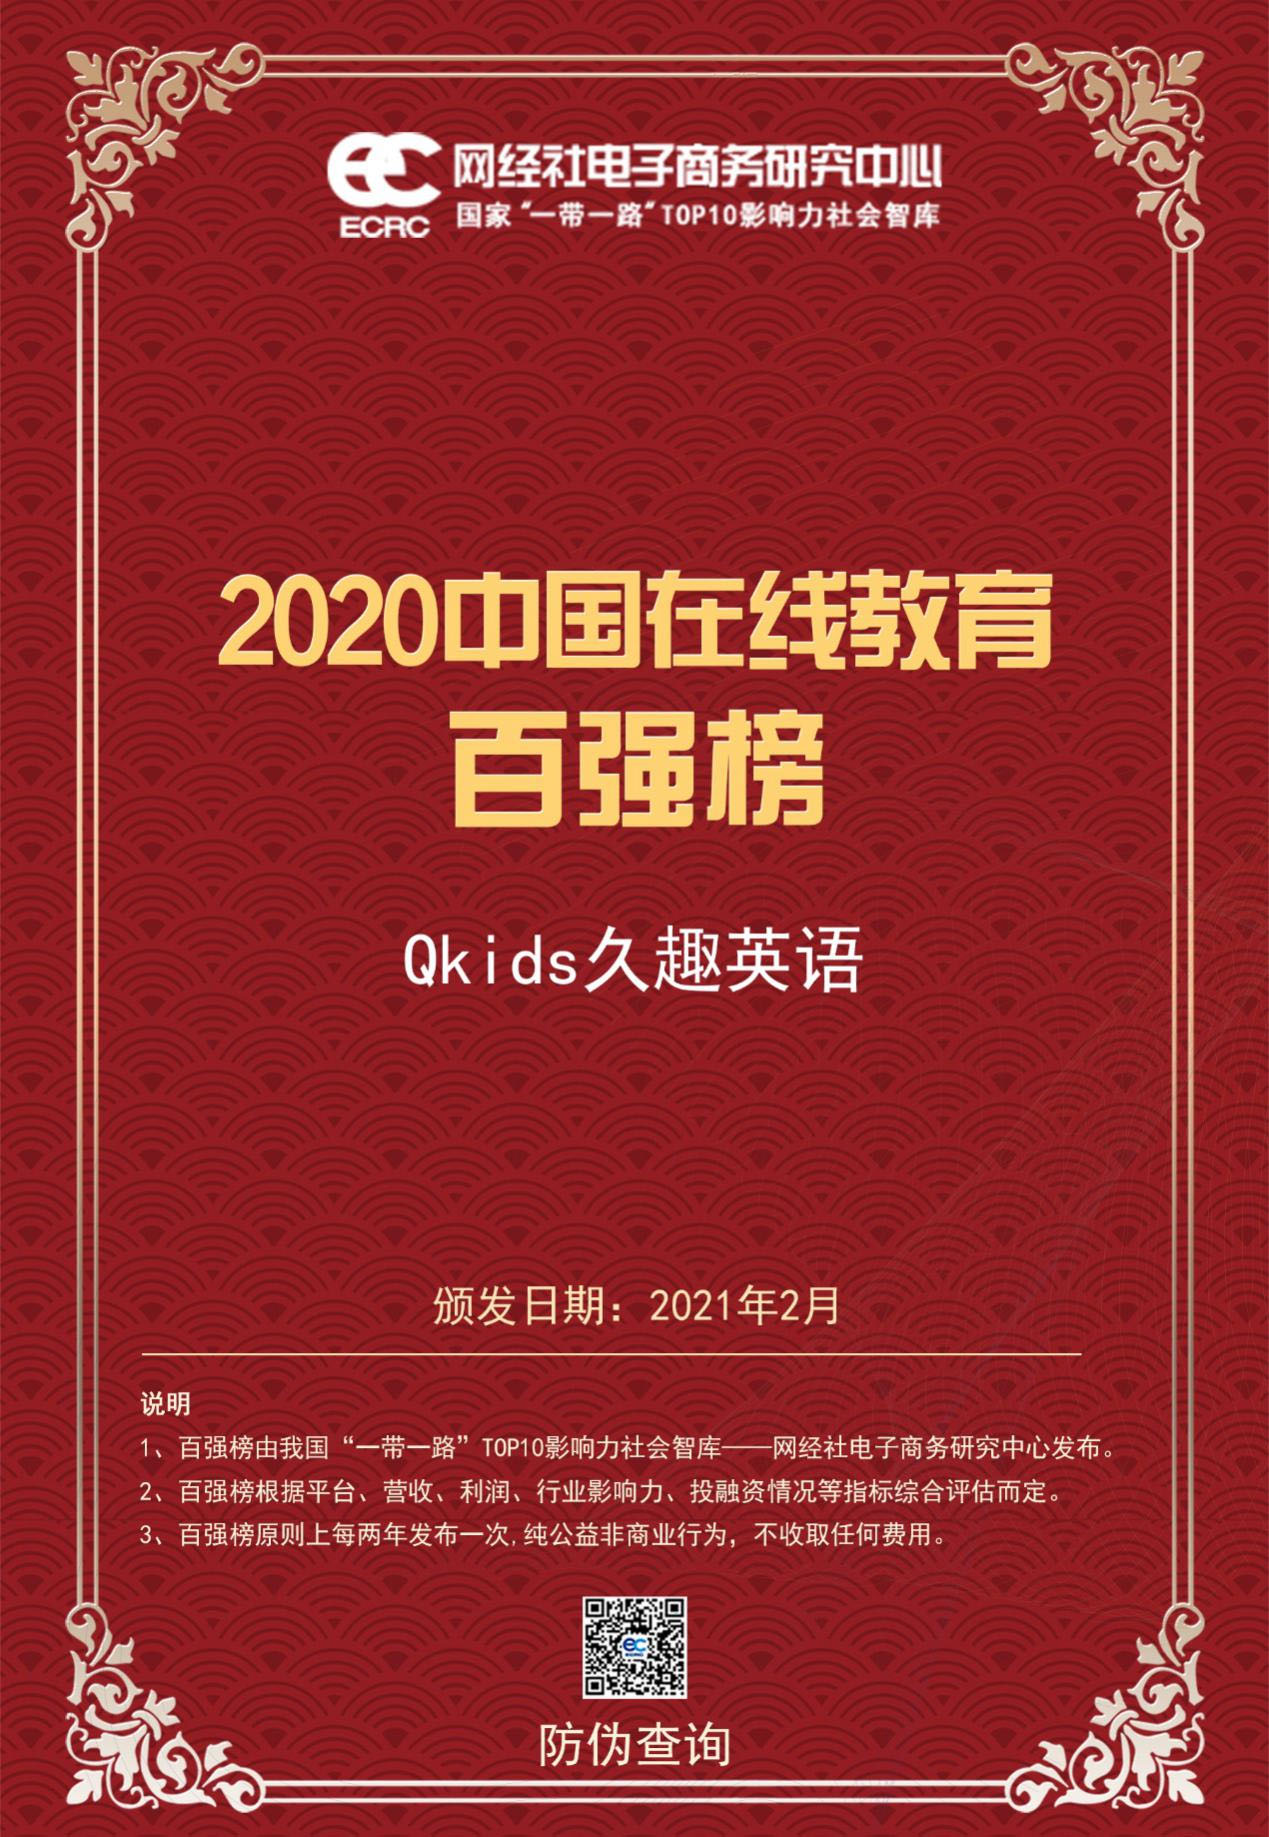 Qkids久趣英语入选年度中国在线教育 百强榜